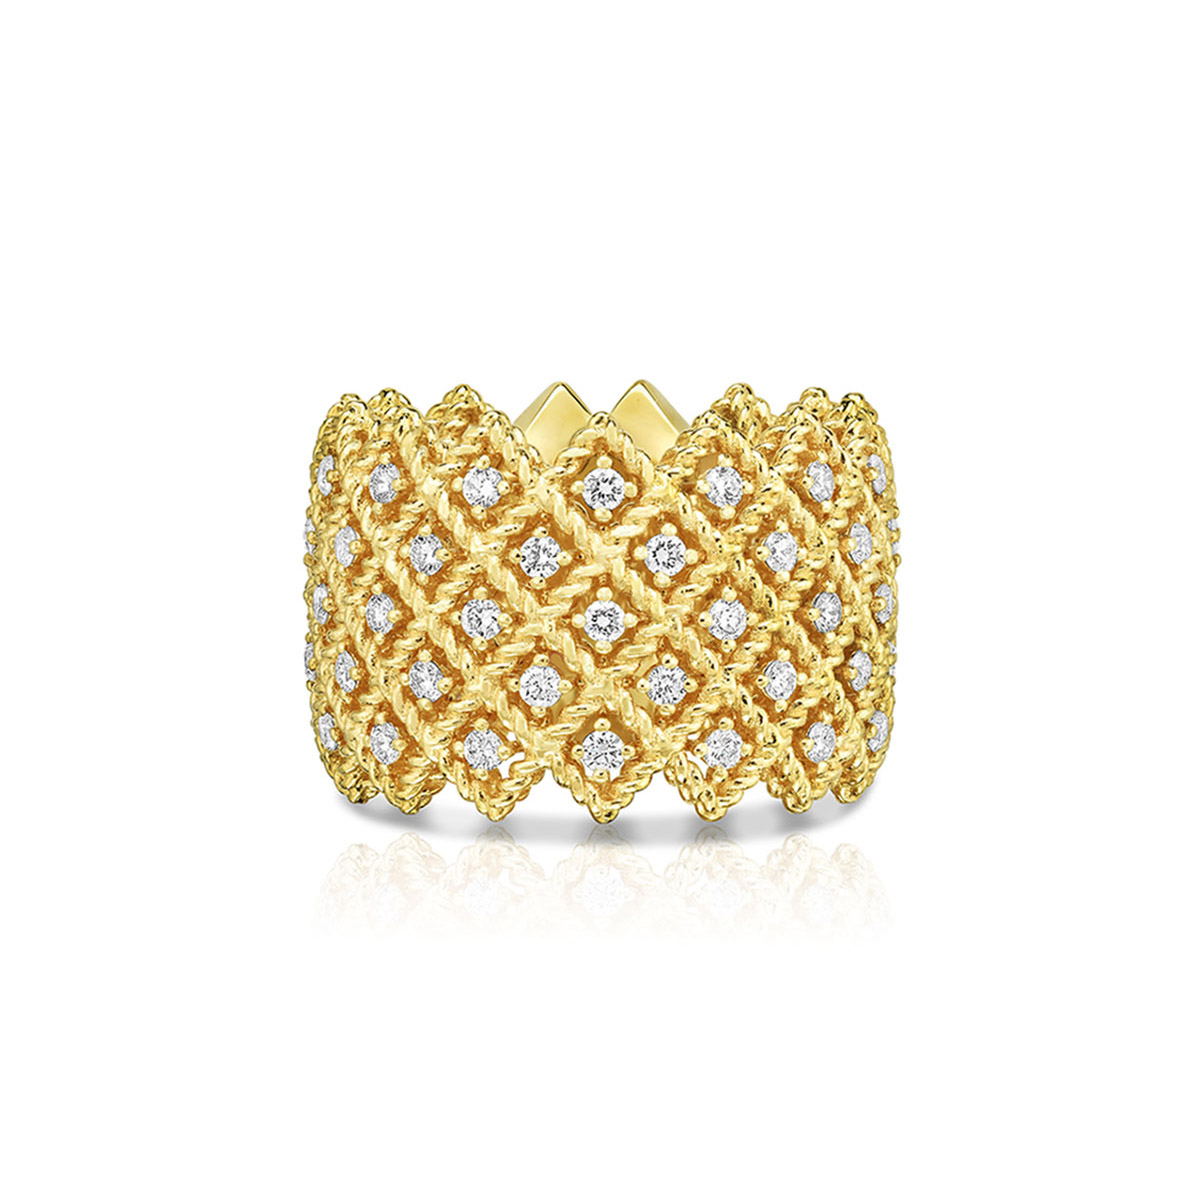 Velkoobchod nabízející vlastní OEM/ODM šperky Pětiřadý prsten s diamanty v designu šperků z 18K žlutého zlata